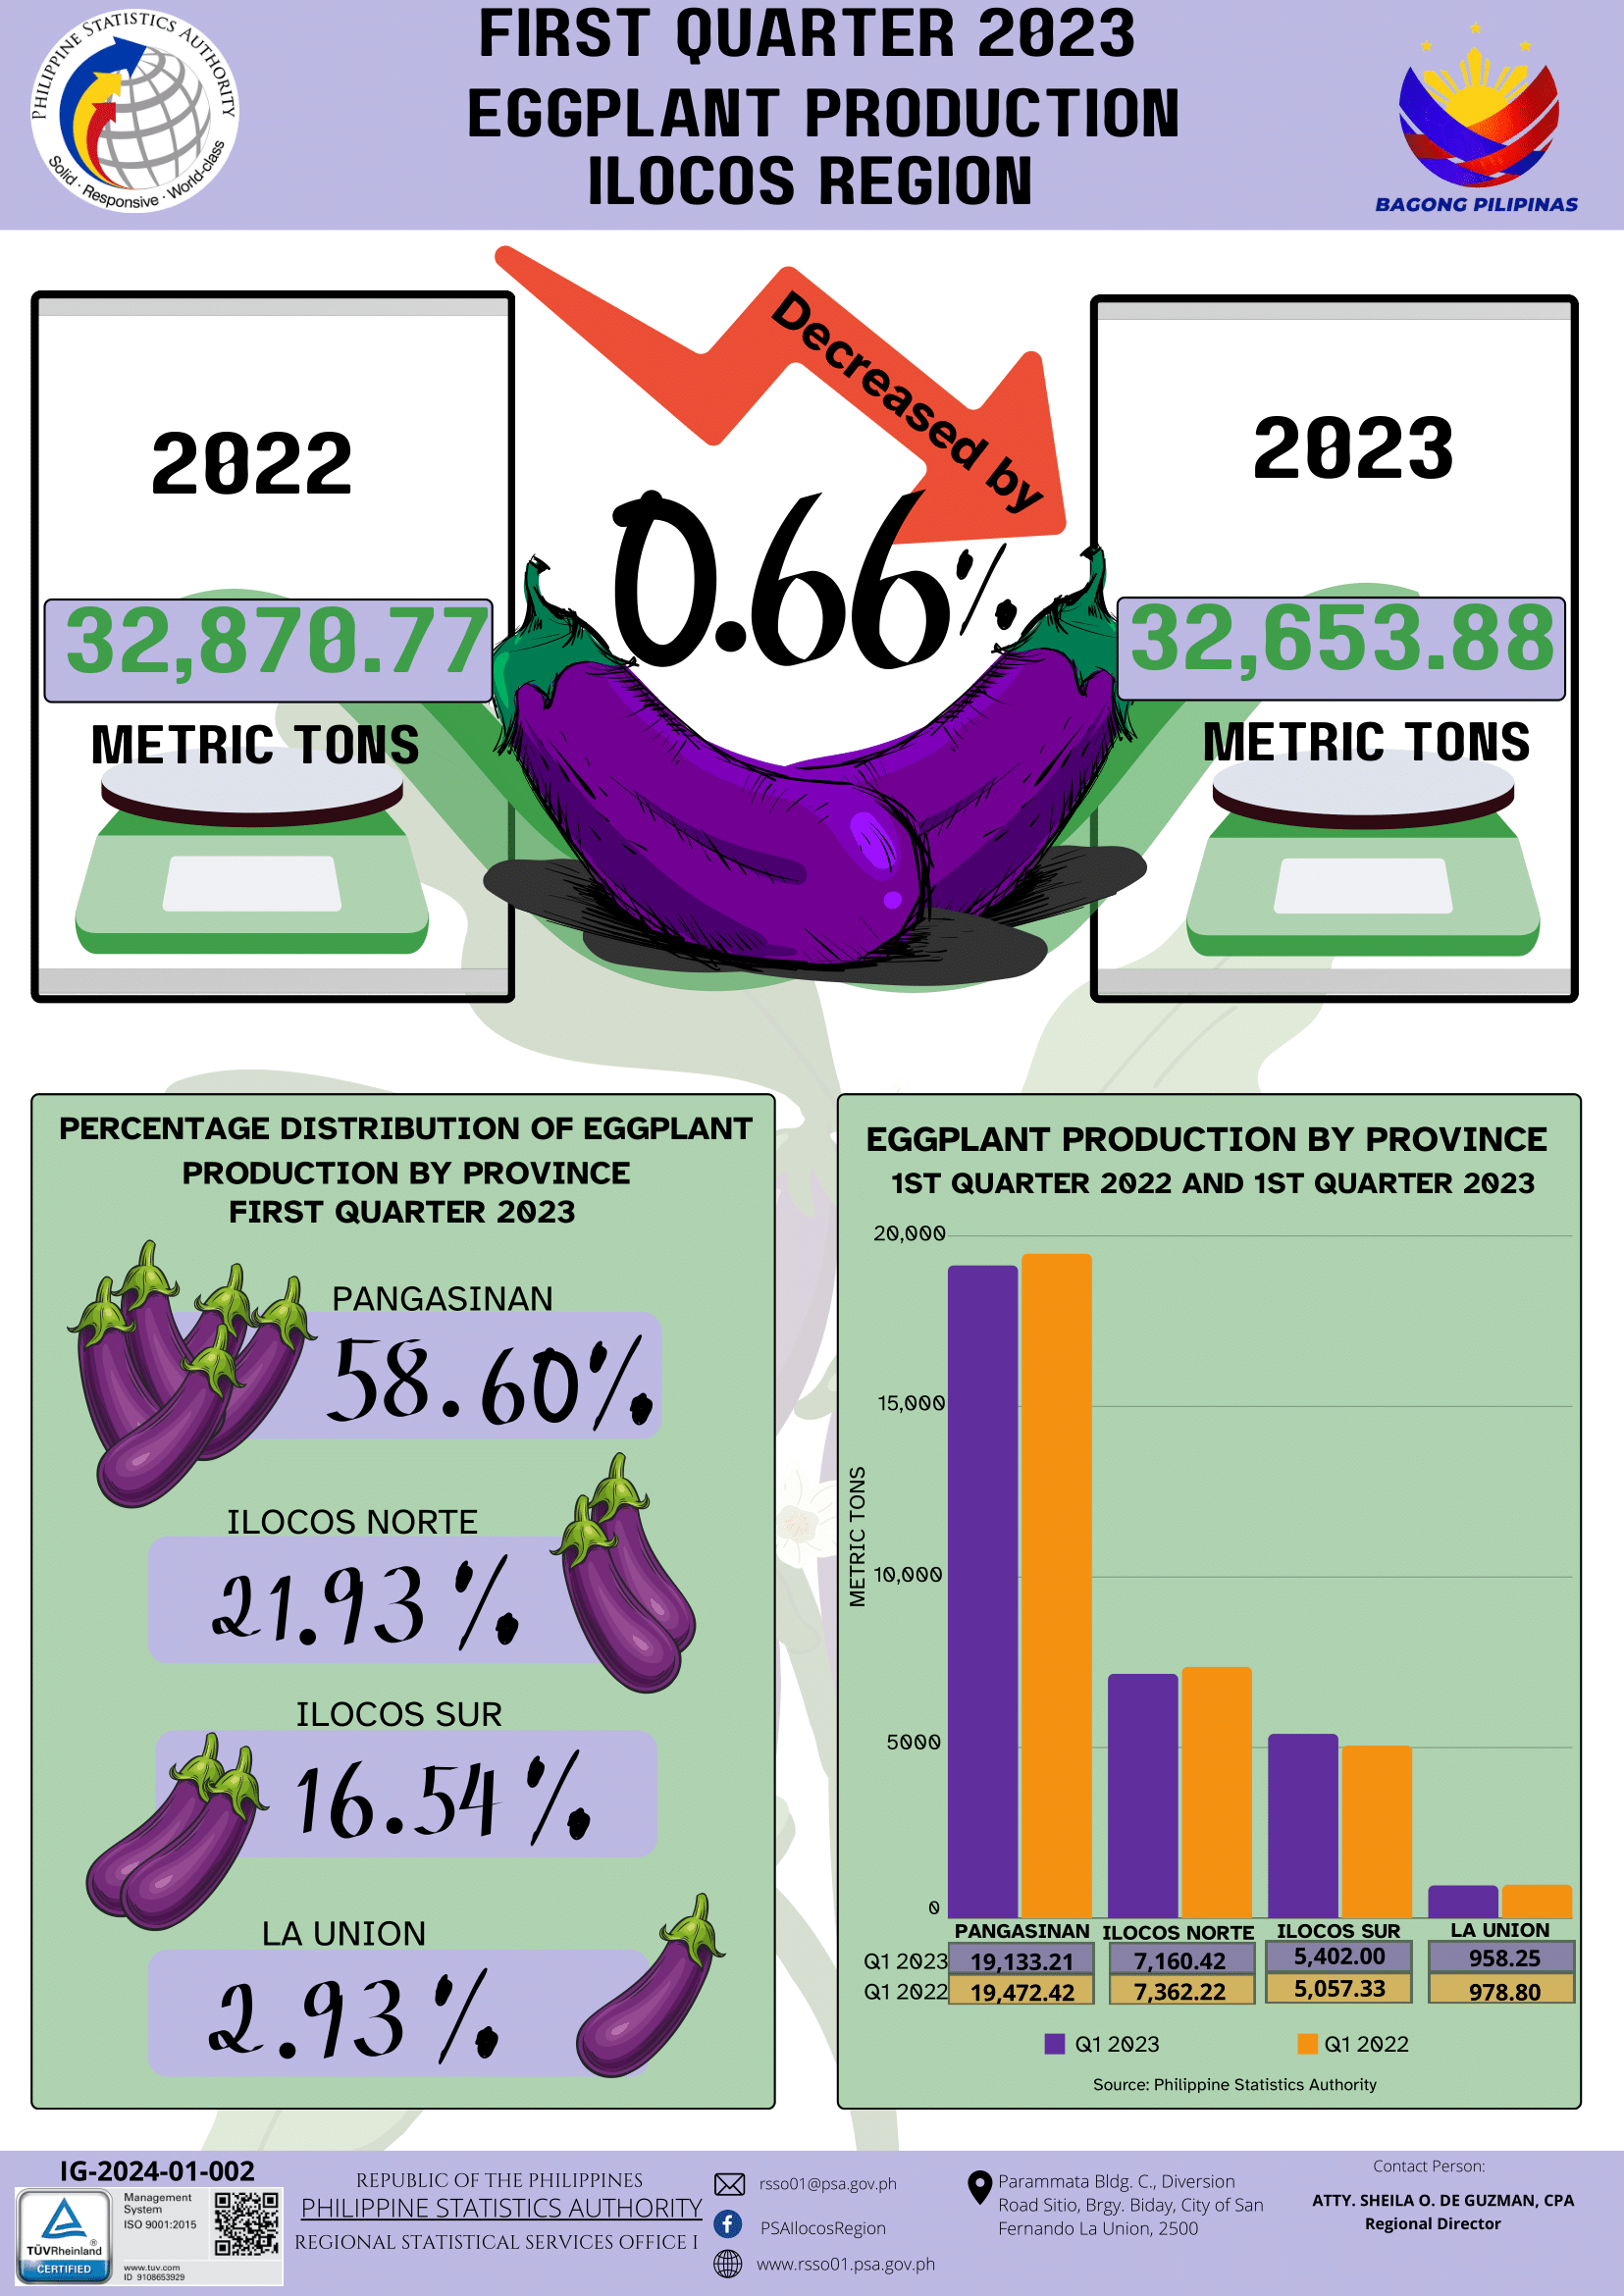 1st Quarter 2023 Eggplant Production